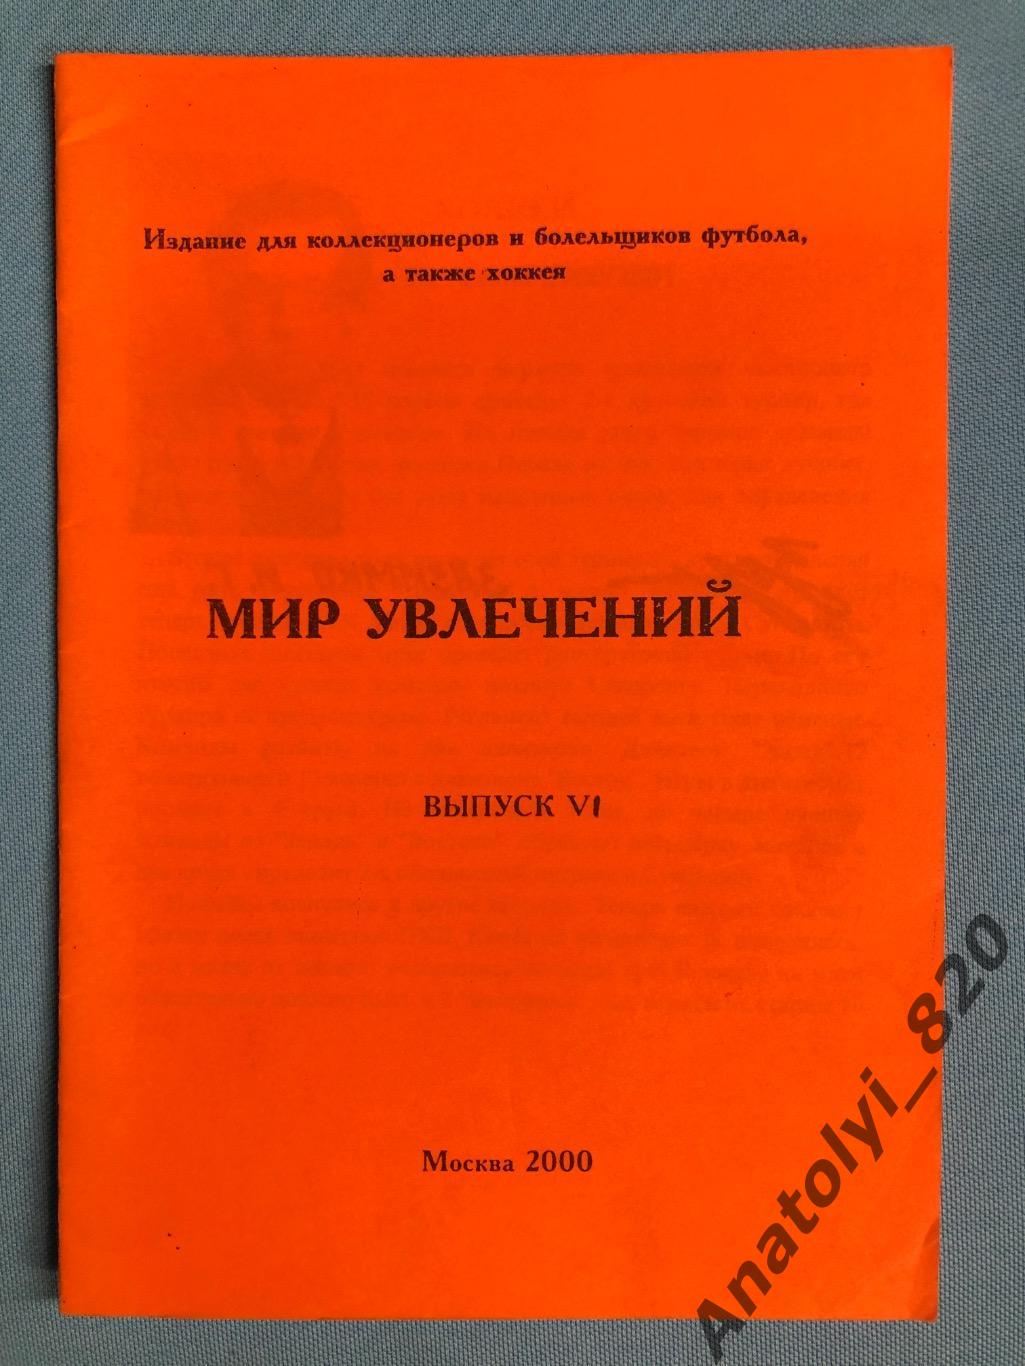 Мир увлечений, Москва 2000 год выпуск № 6